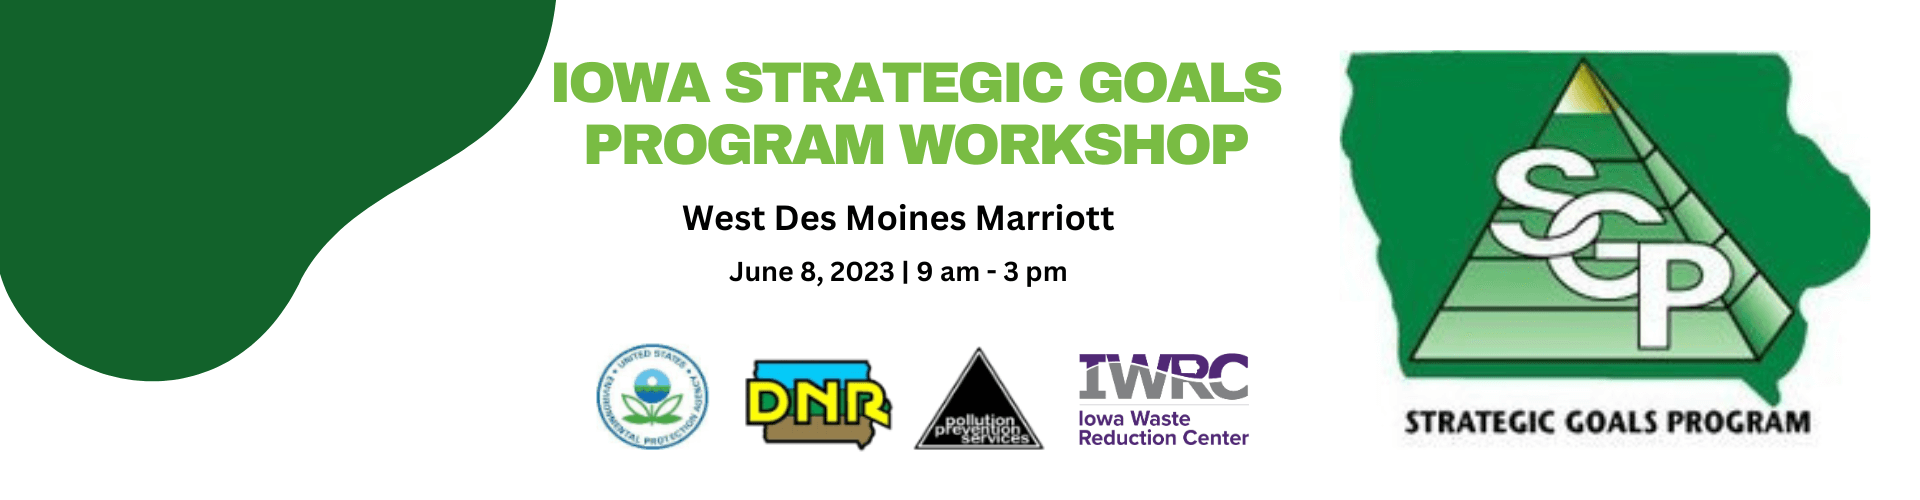 Iowa Strategic Goals Program Workshop